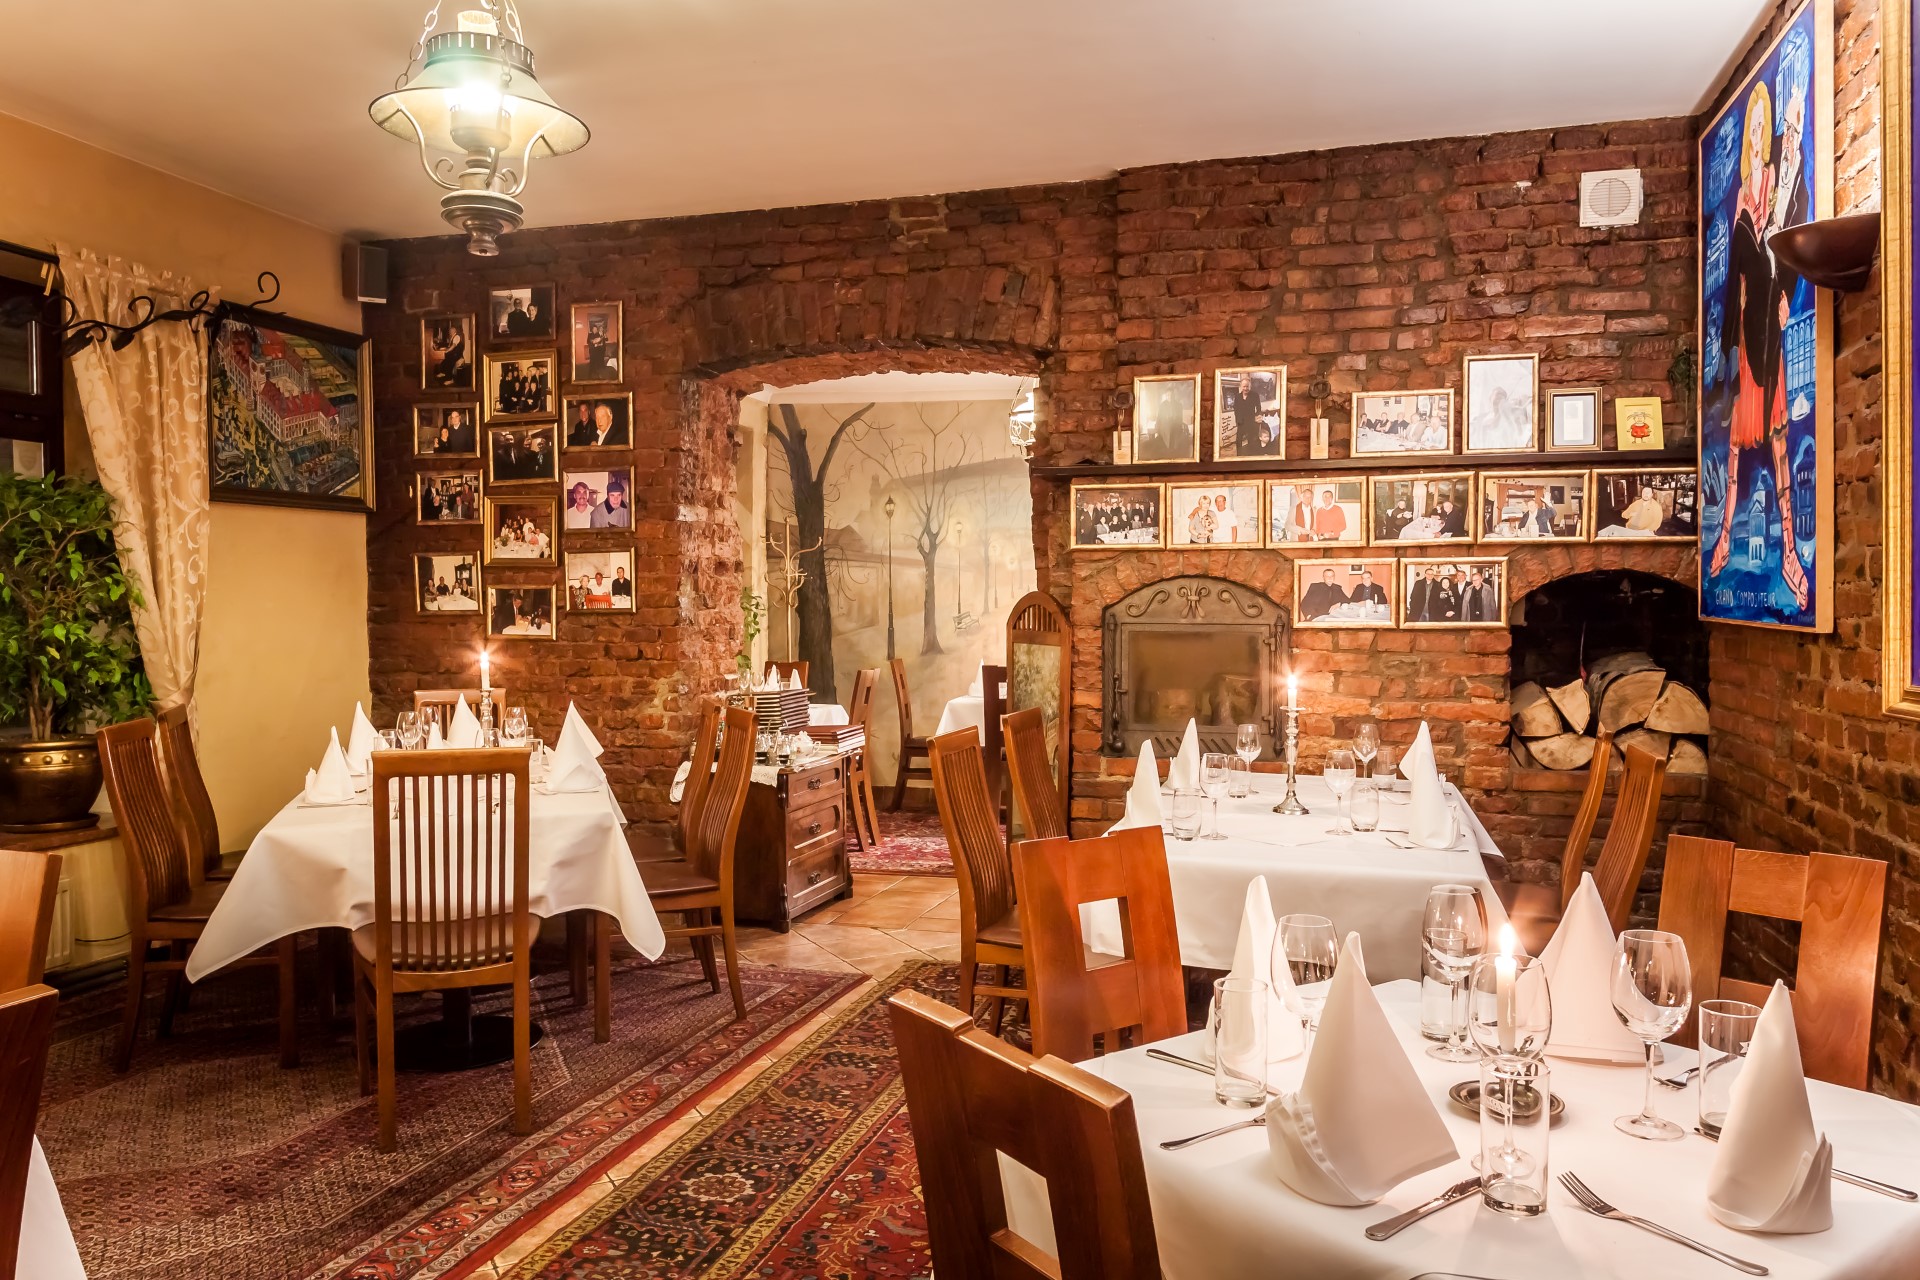 Krakowskie restauracje – gdzie można dobrze zjeść w pobliżu rynku?